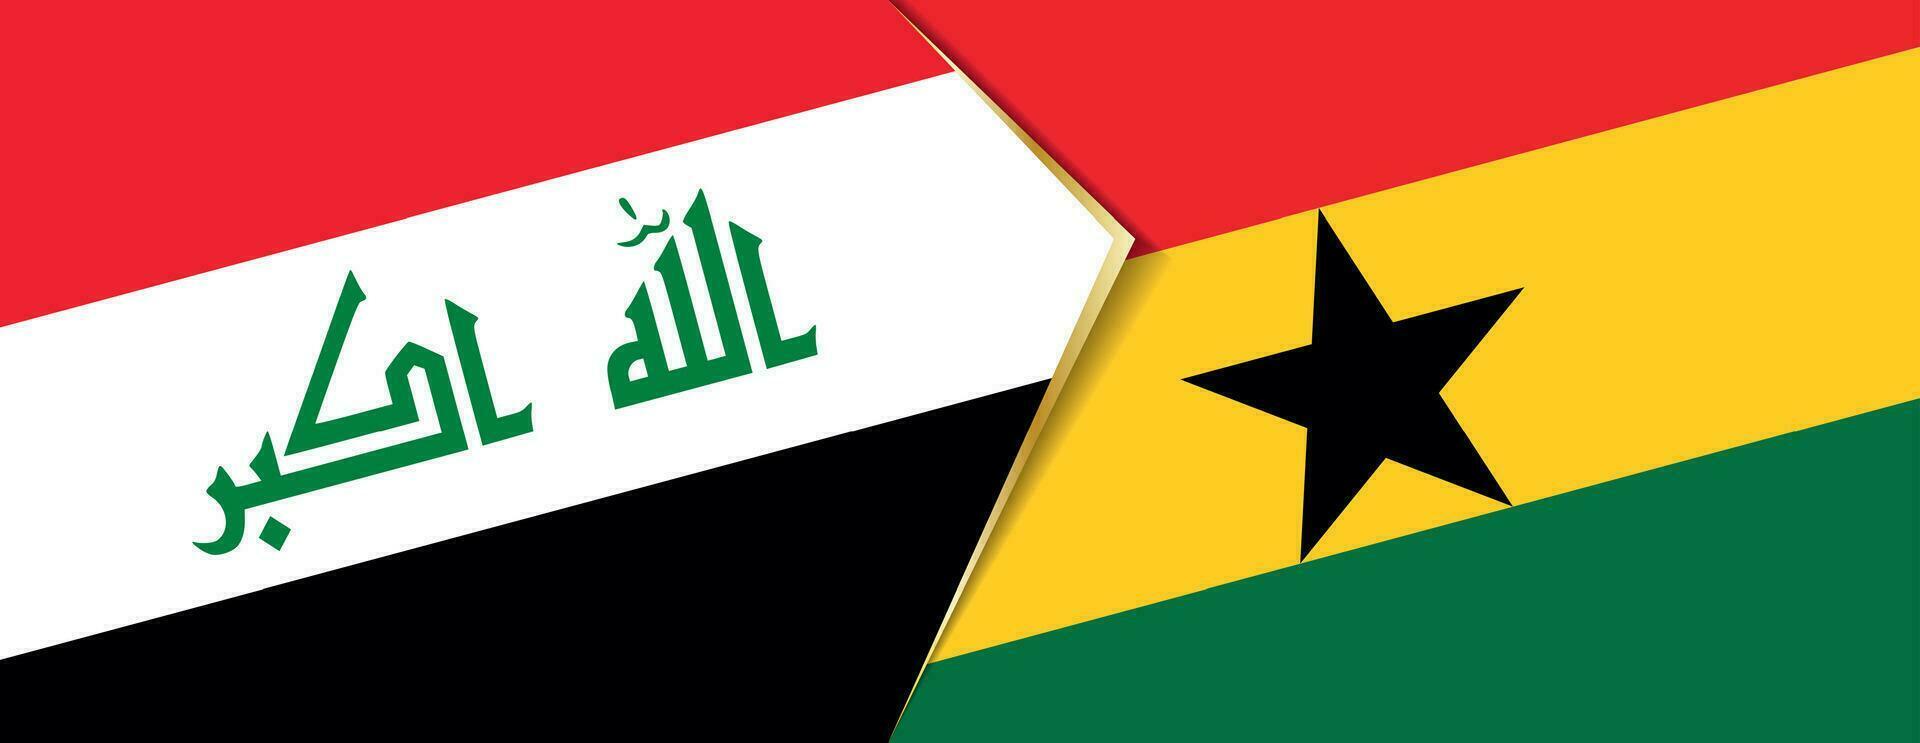 Irak y Ghana banderas, dos vector banderas